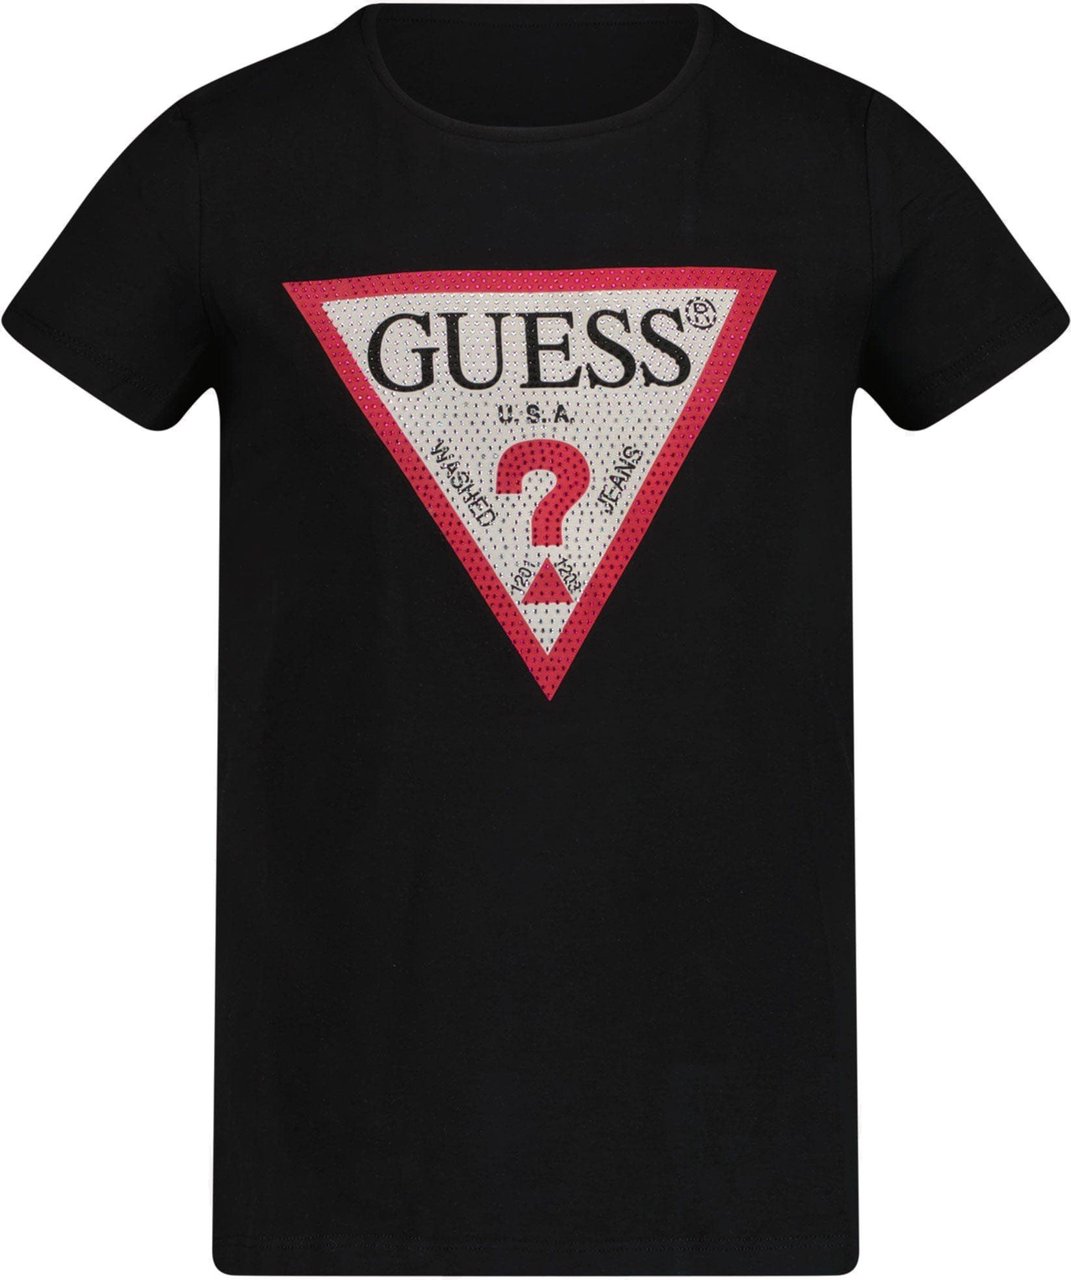 Guess Guess Kinder Meisjes T-Shirt Zwart Zwart